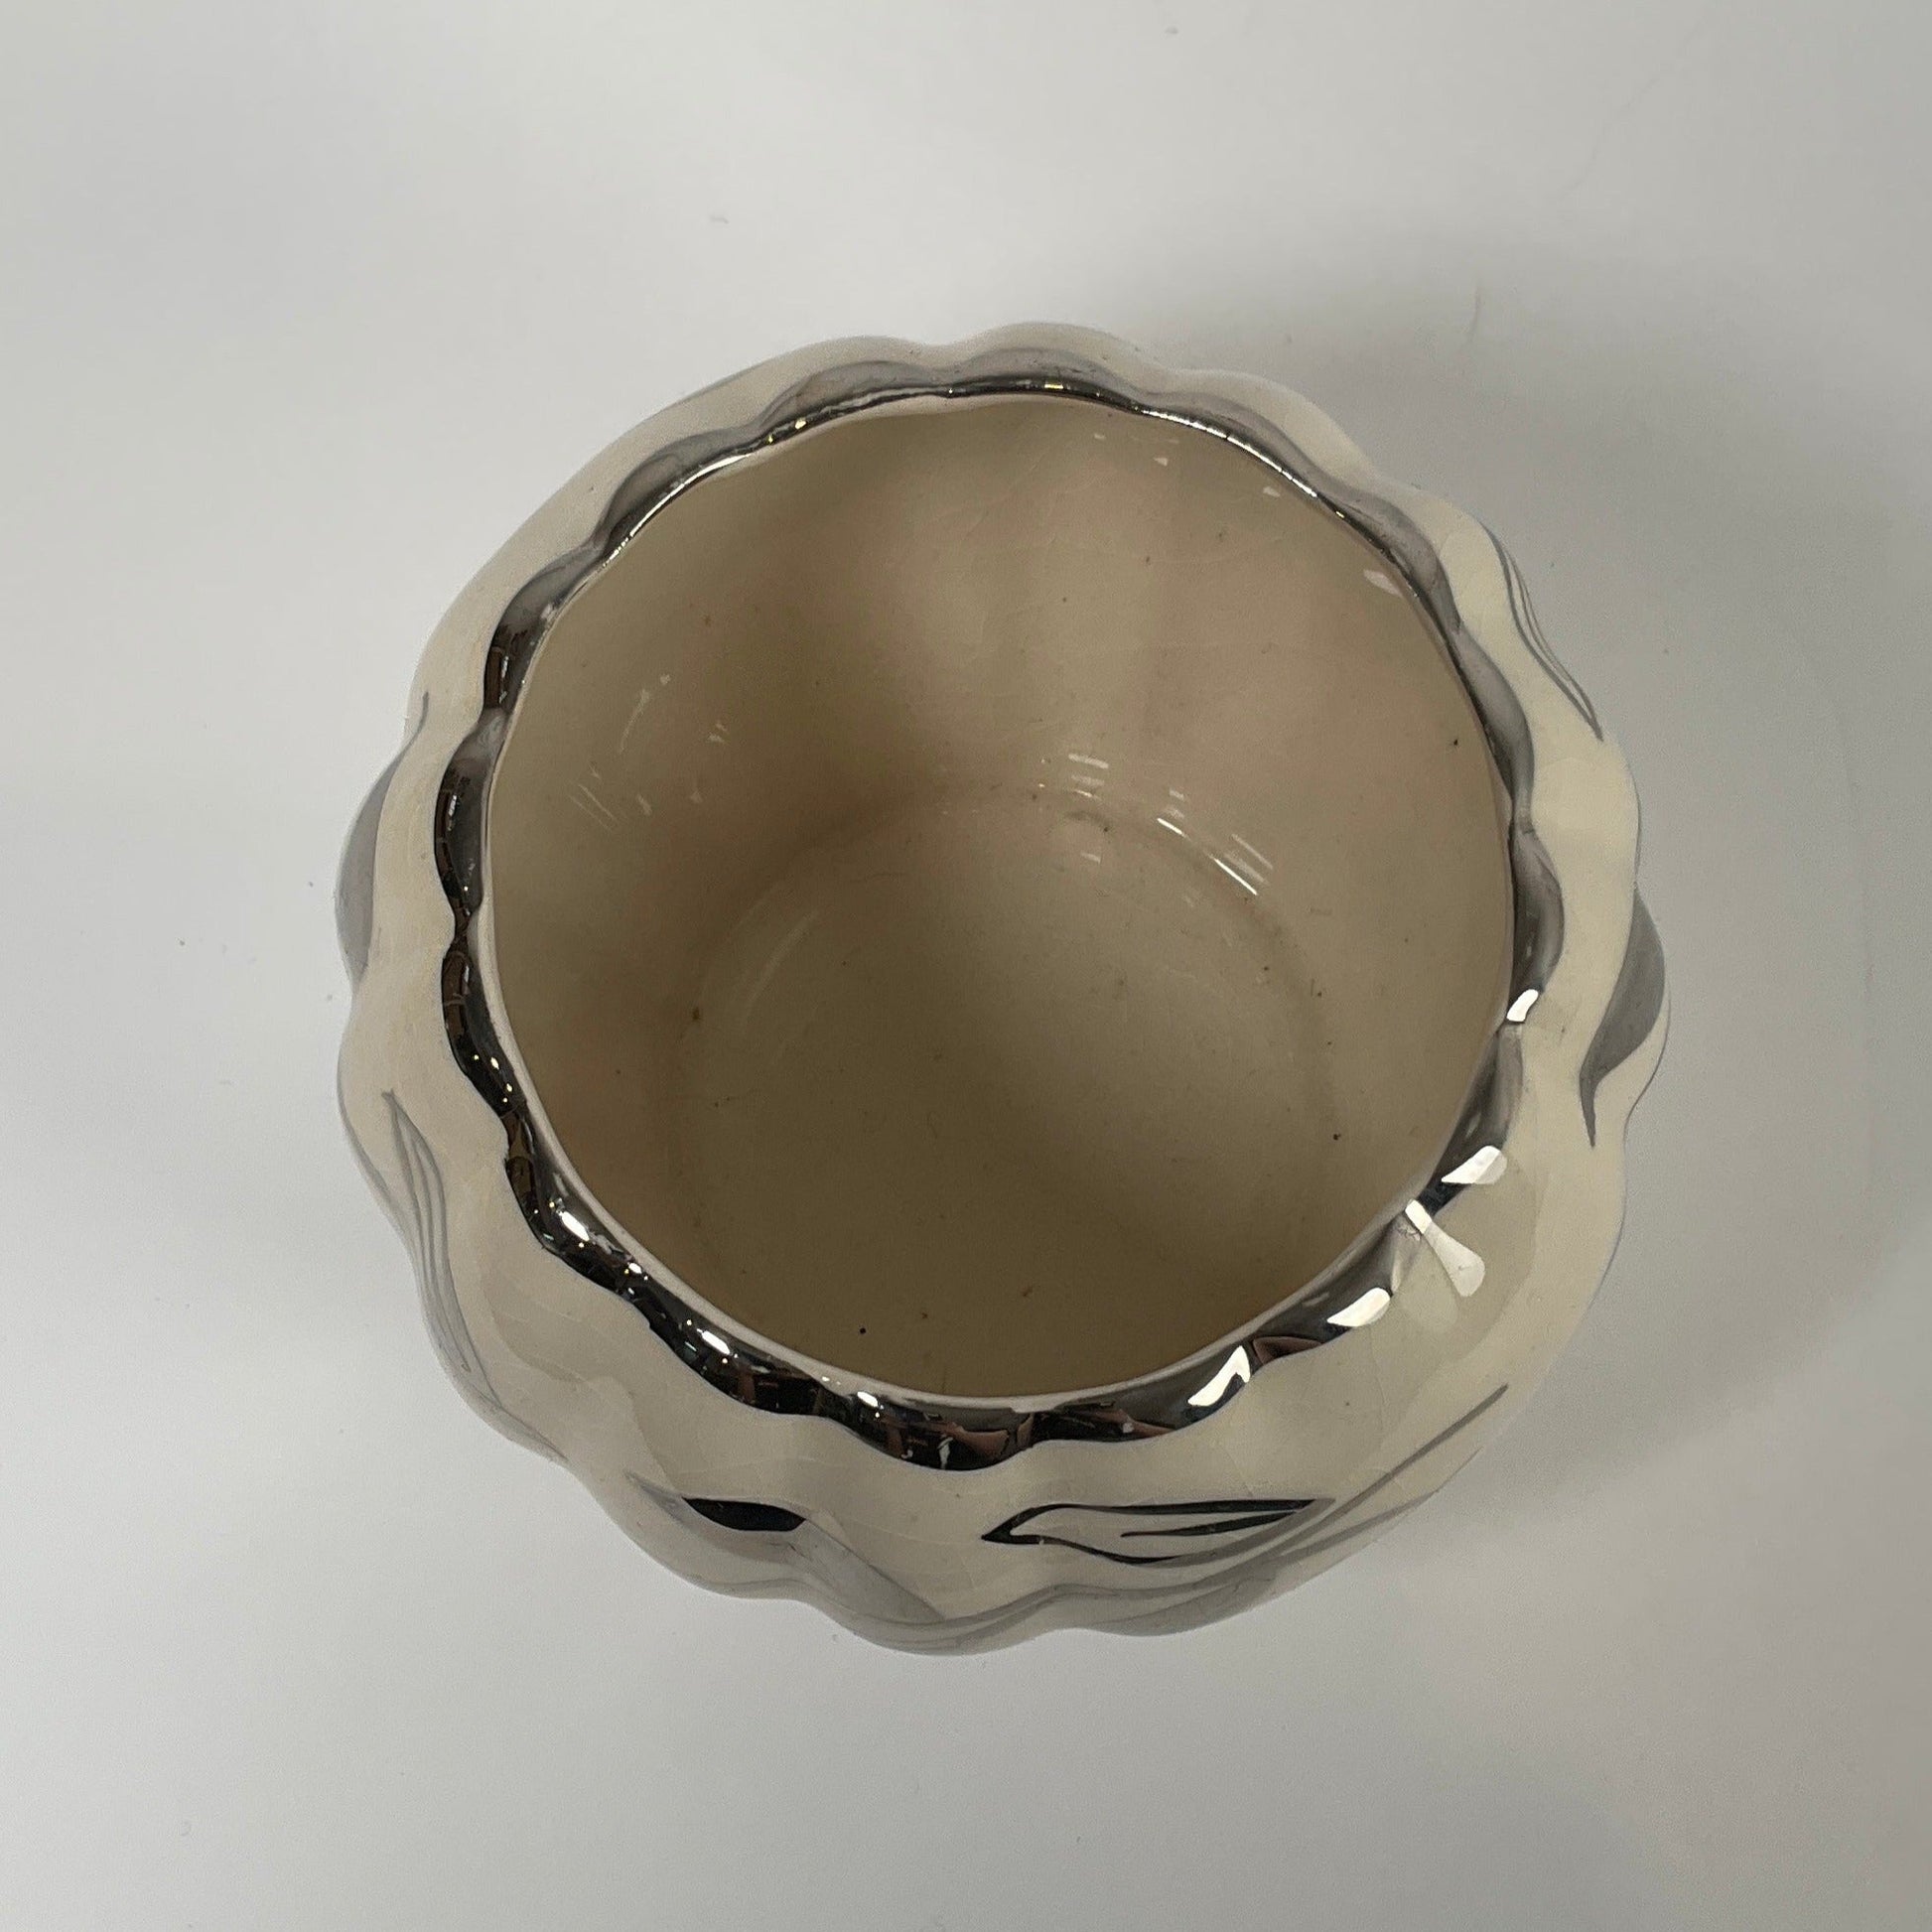 Sudlows Burslem - Silver Trim Bowl Collectibles